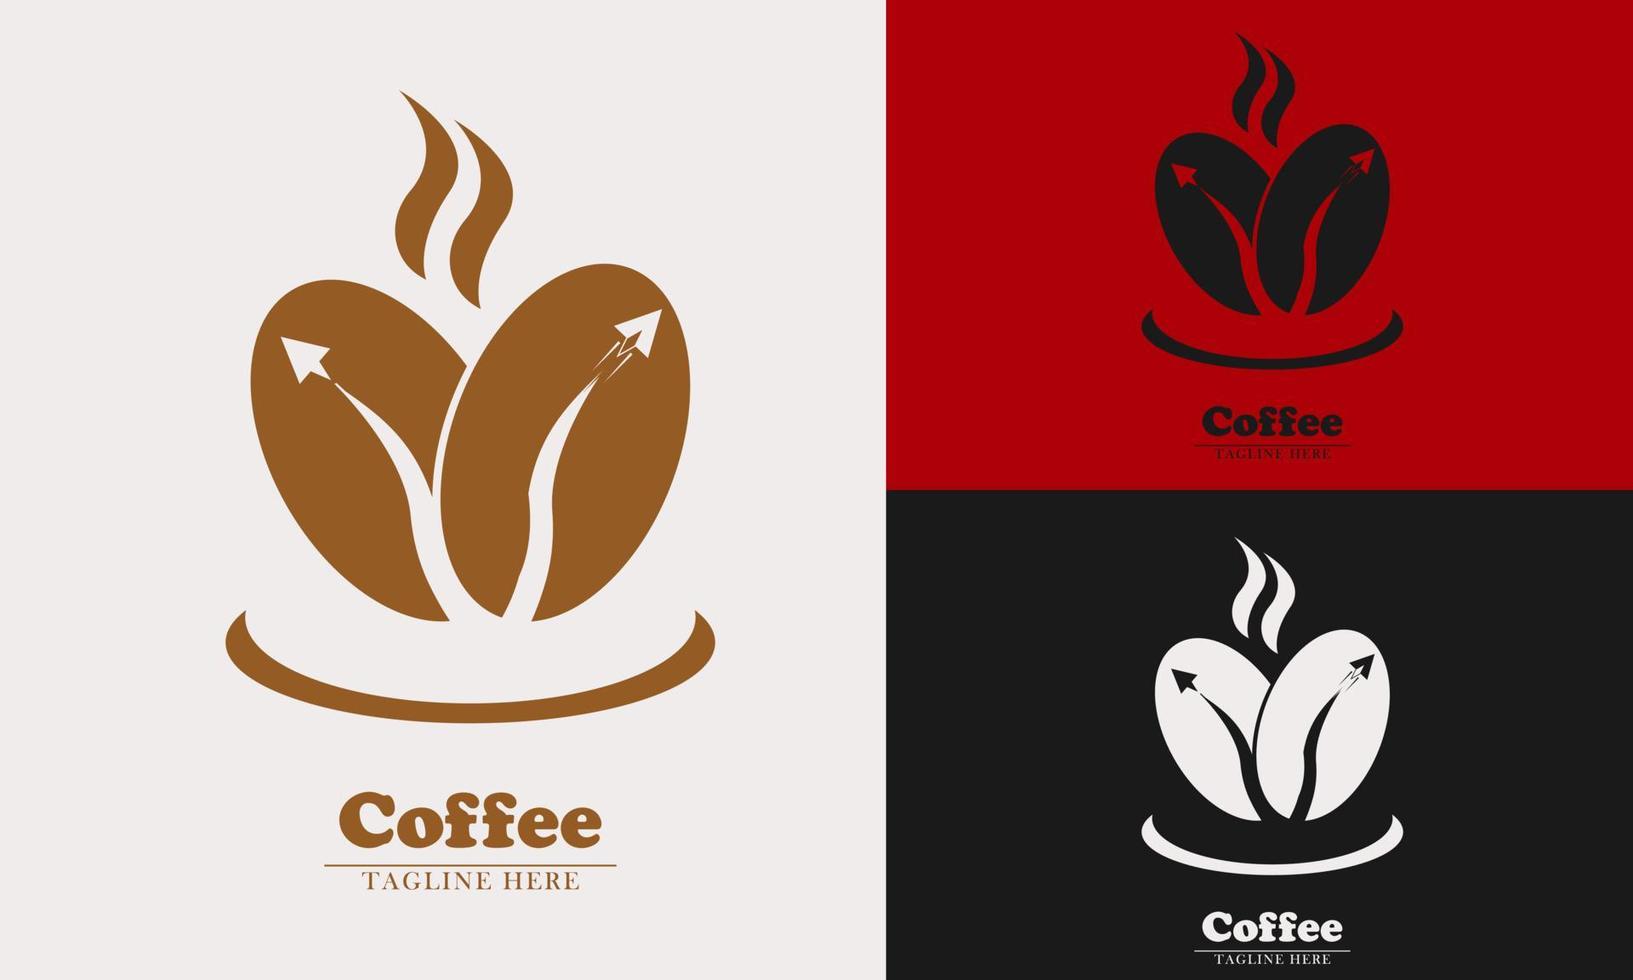 dos granos de café y un avión sobre el logotipo del icono del elemento de taza vector